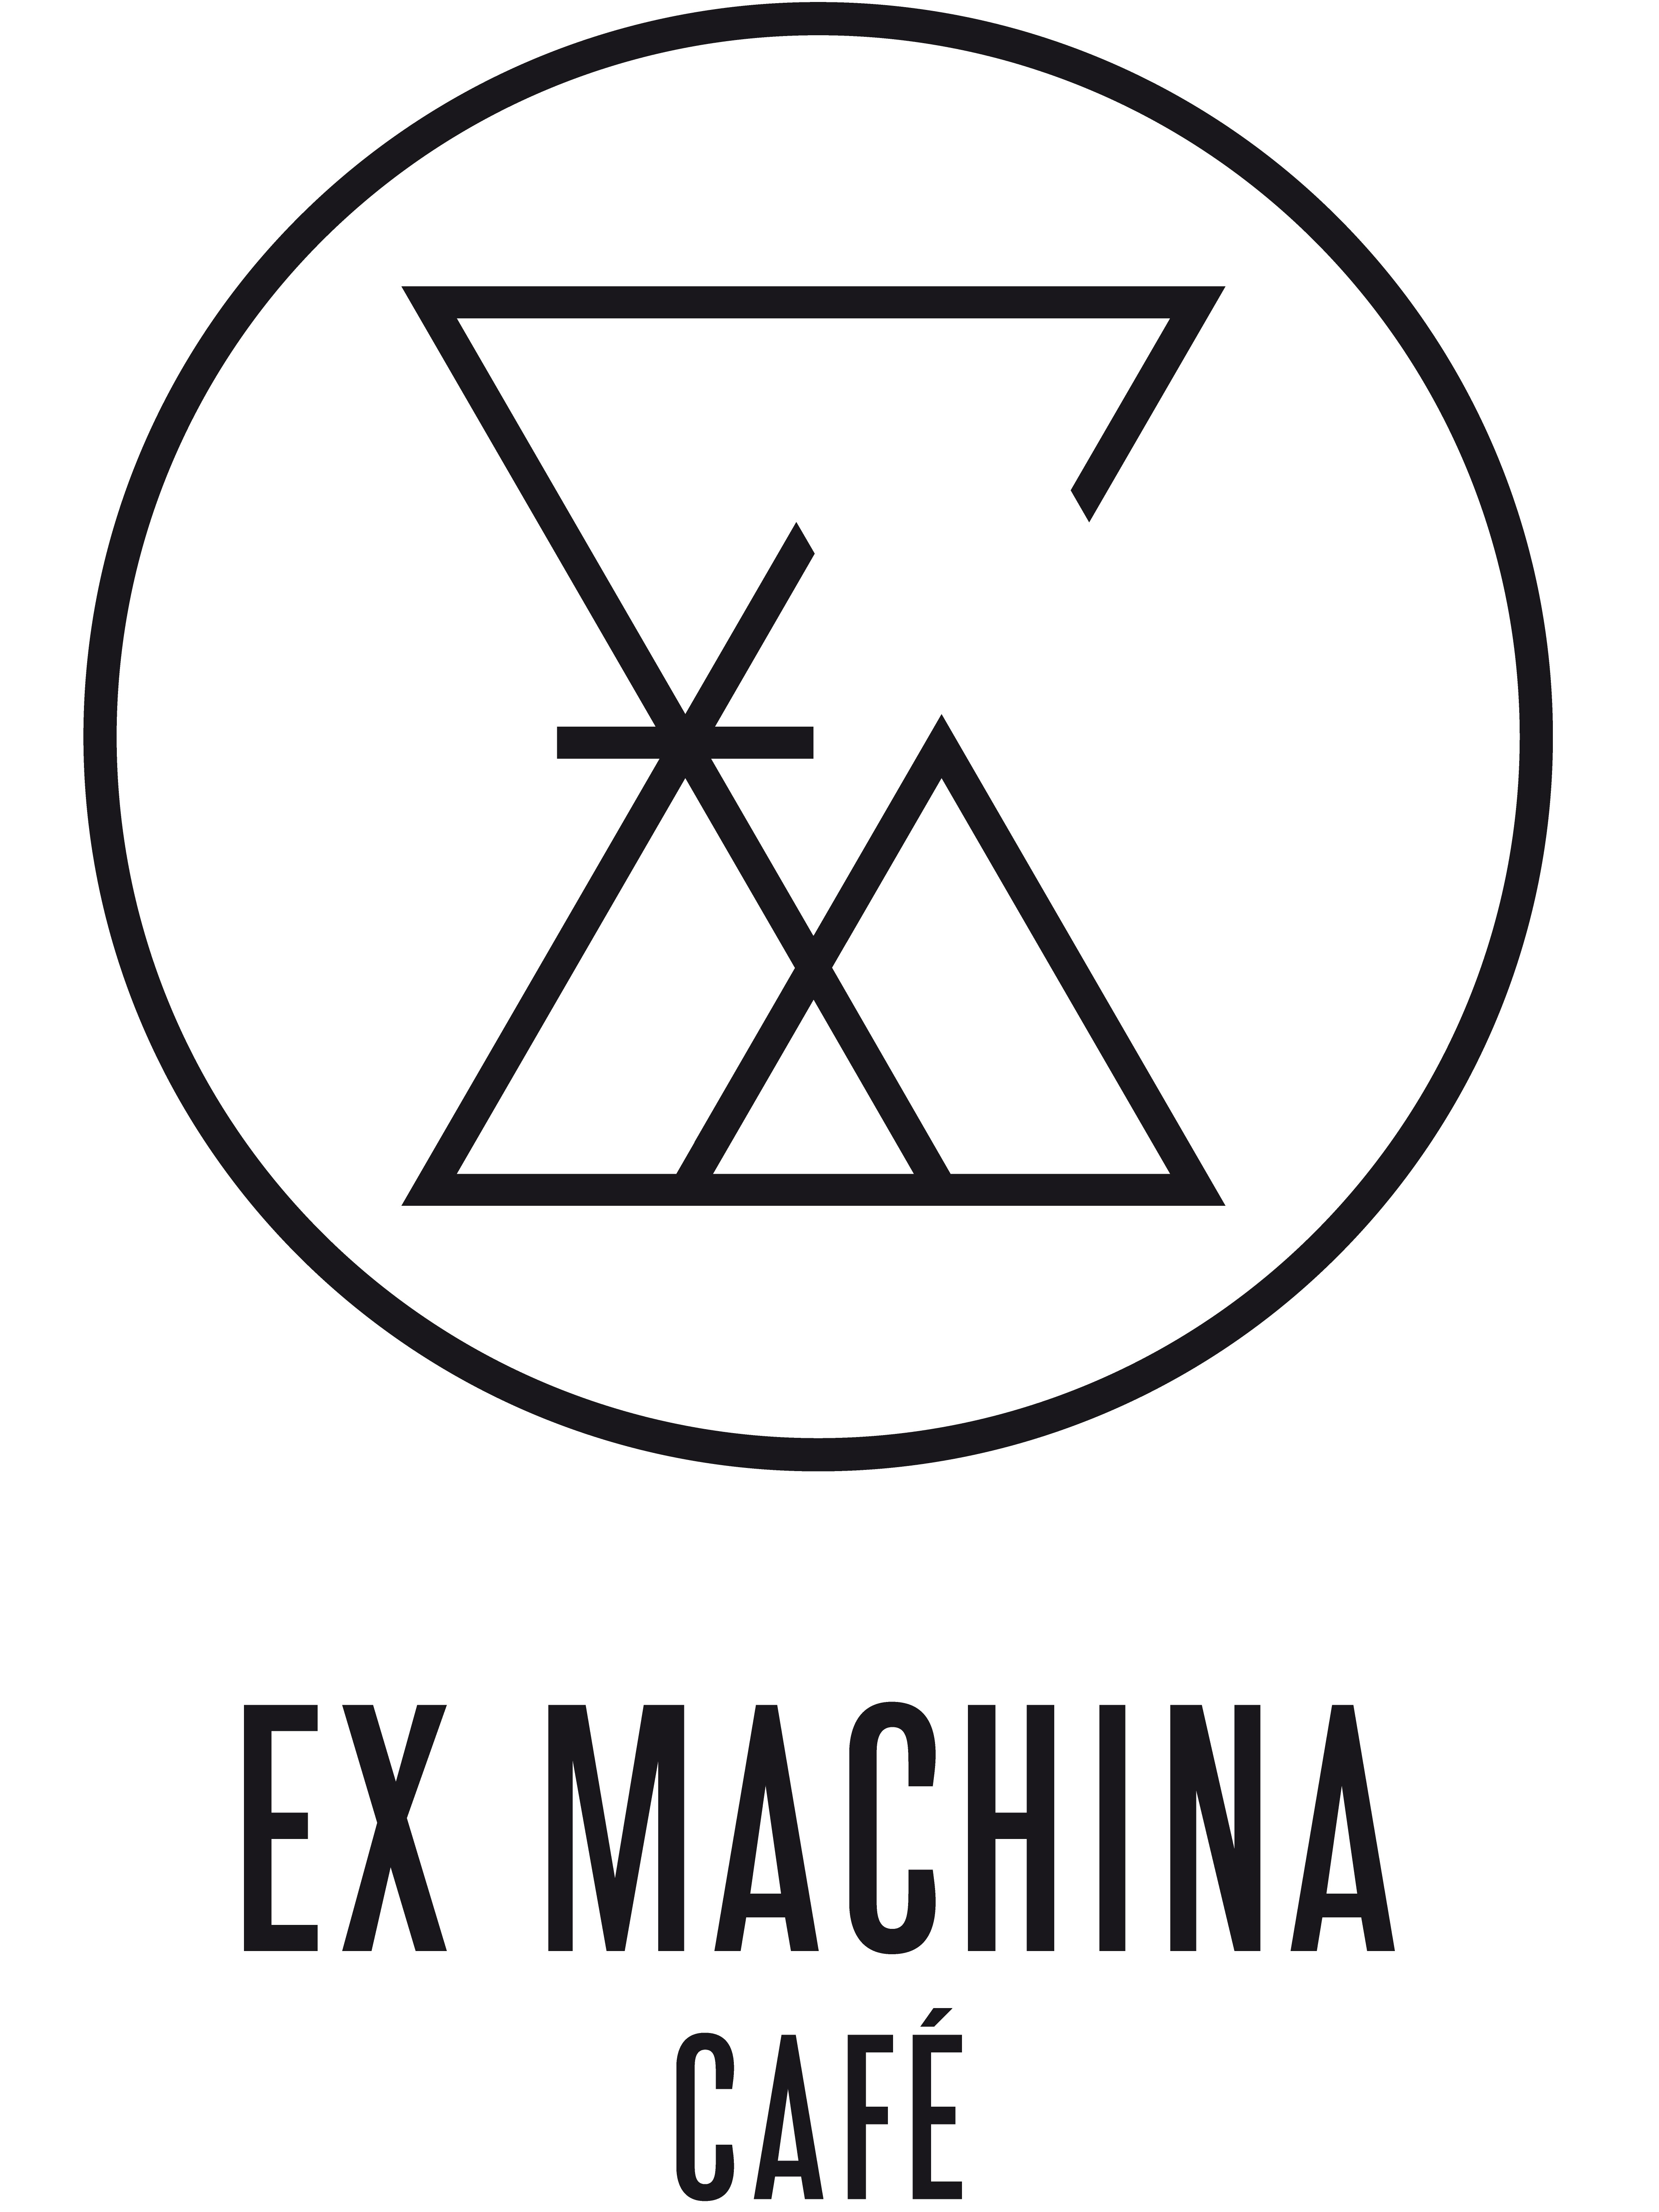 Café Ex Machina logo.png